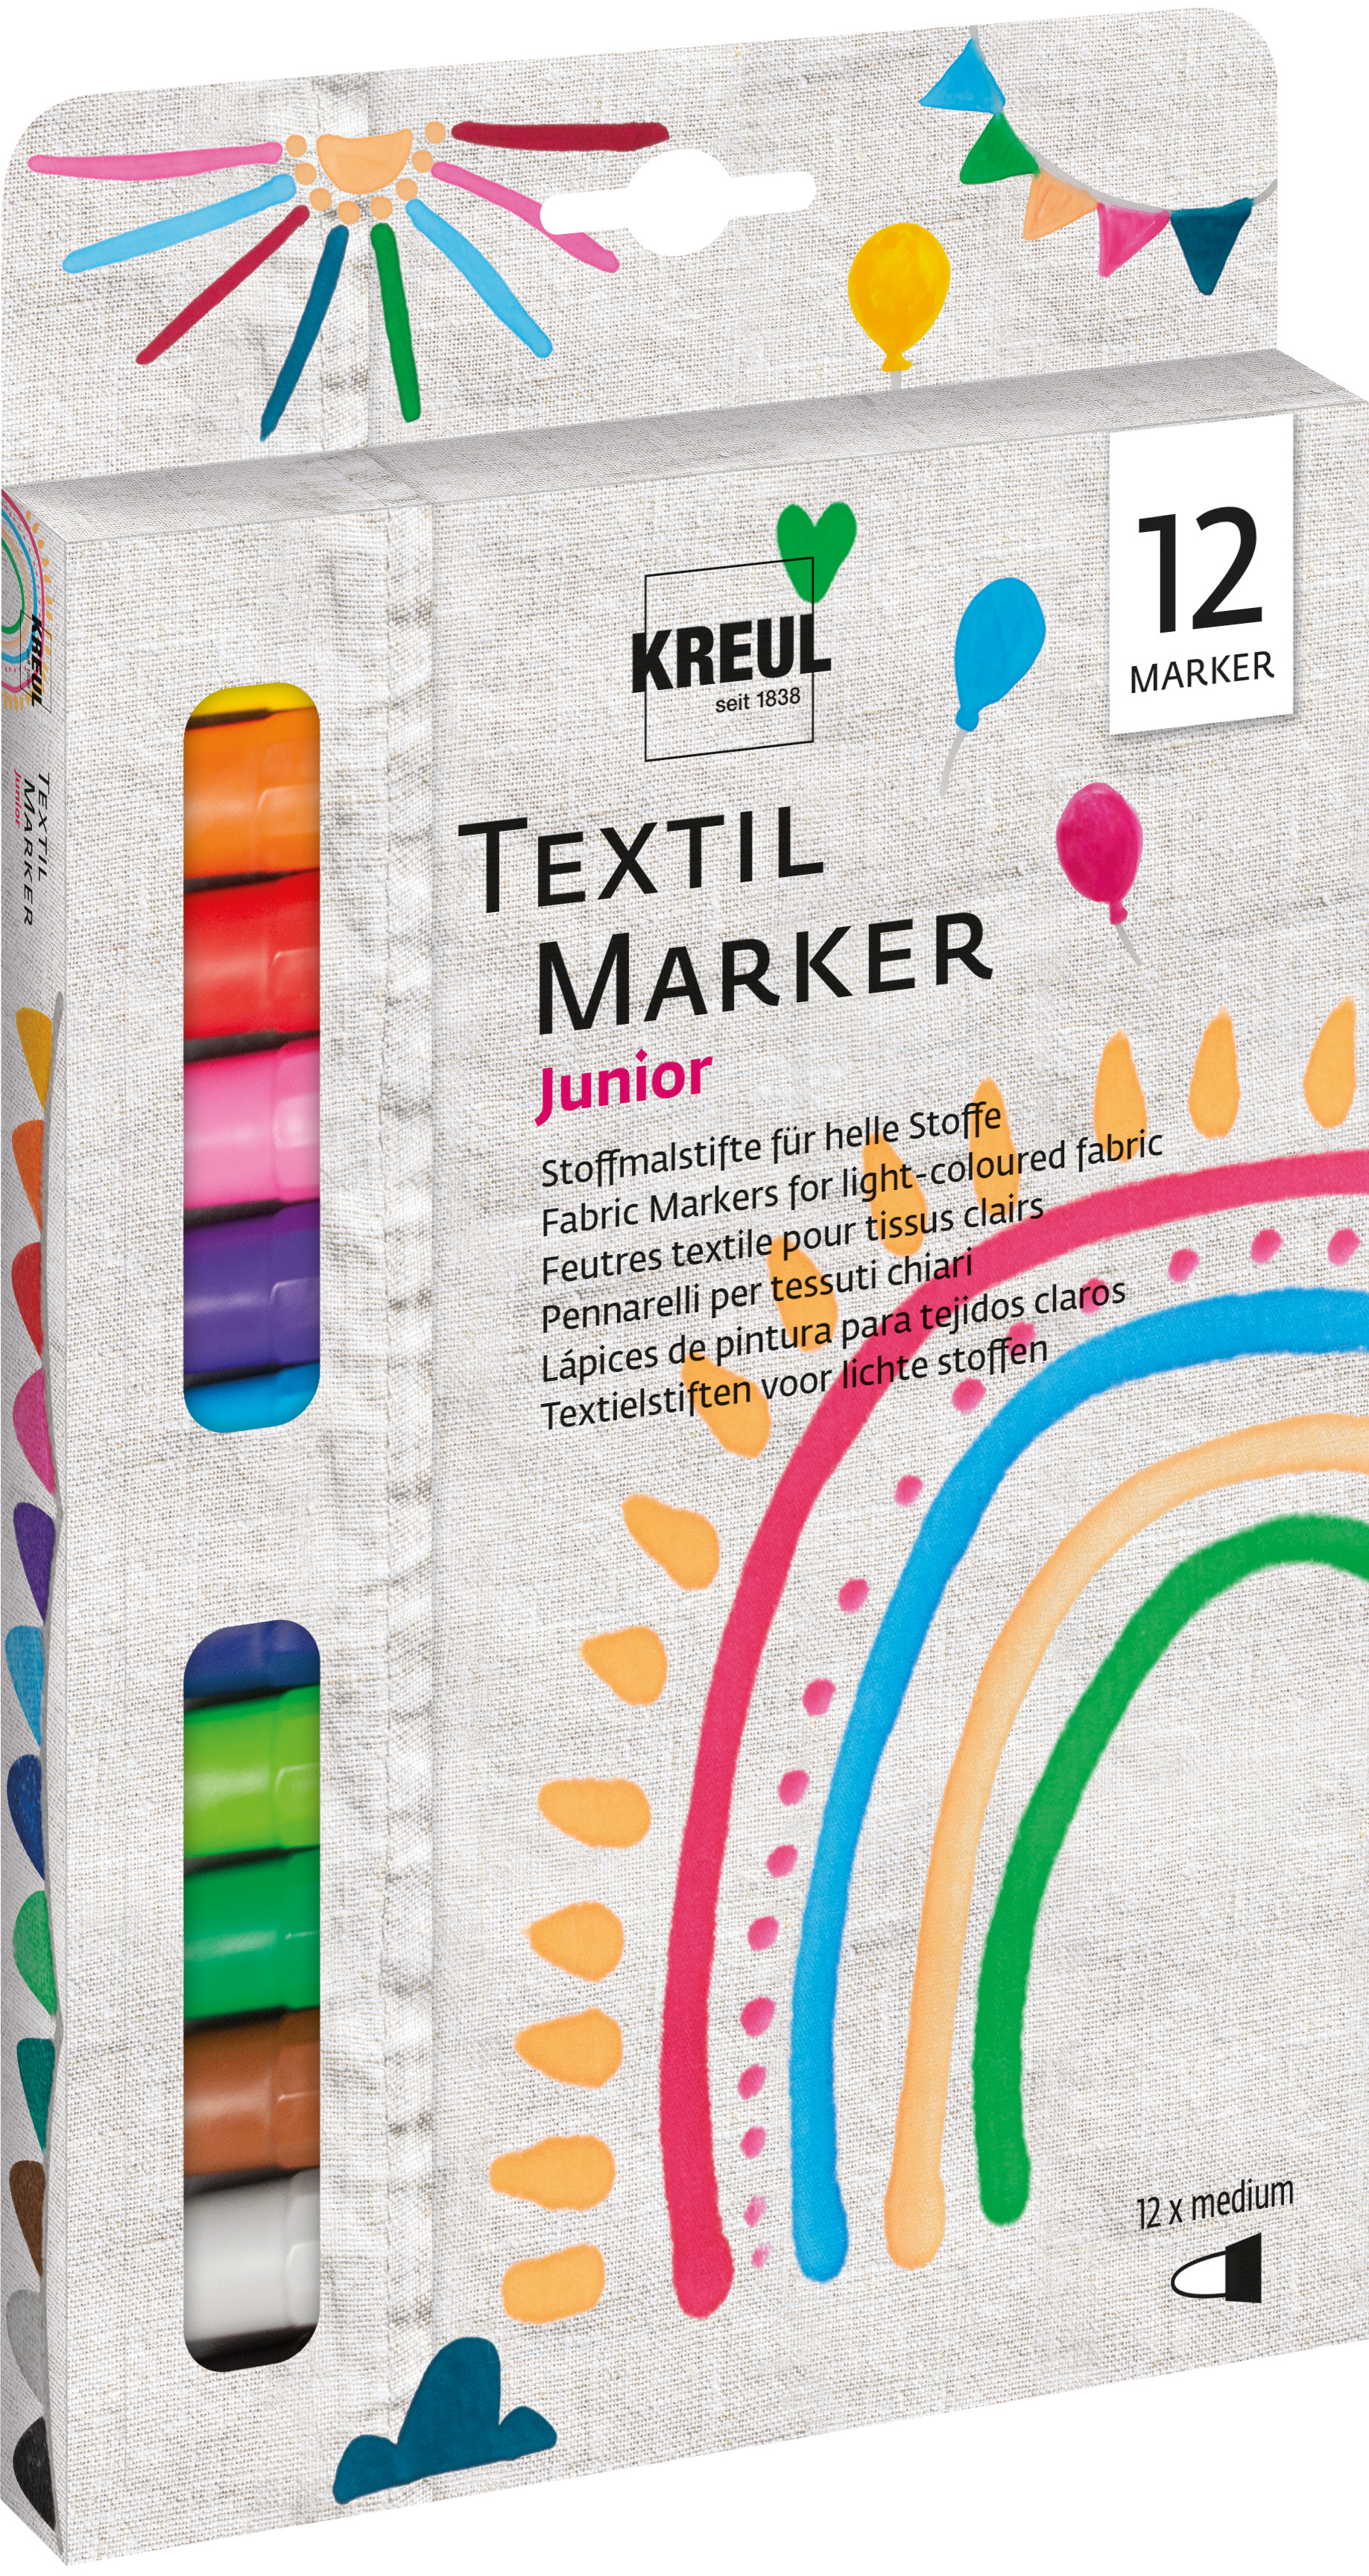 KREUL Textil Marker medium Junior 12er Set Nettopreis